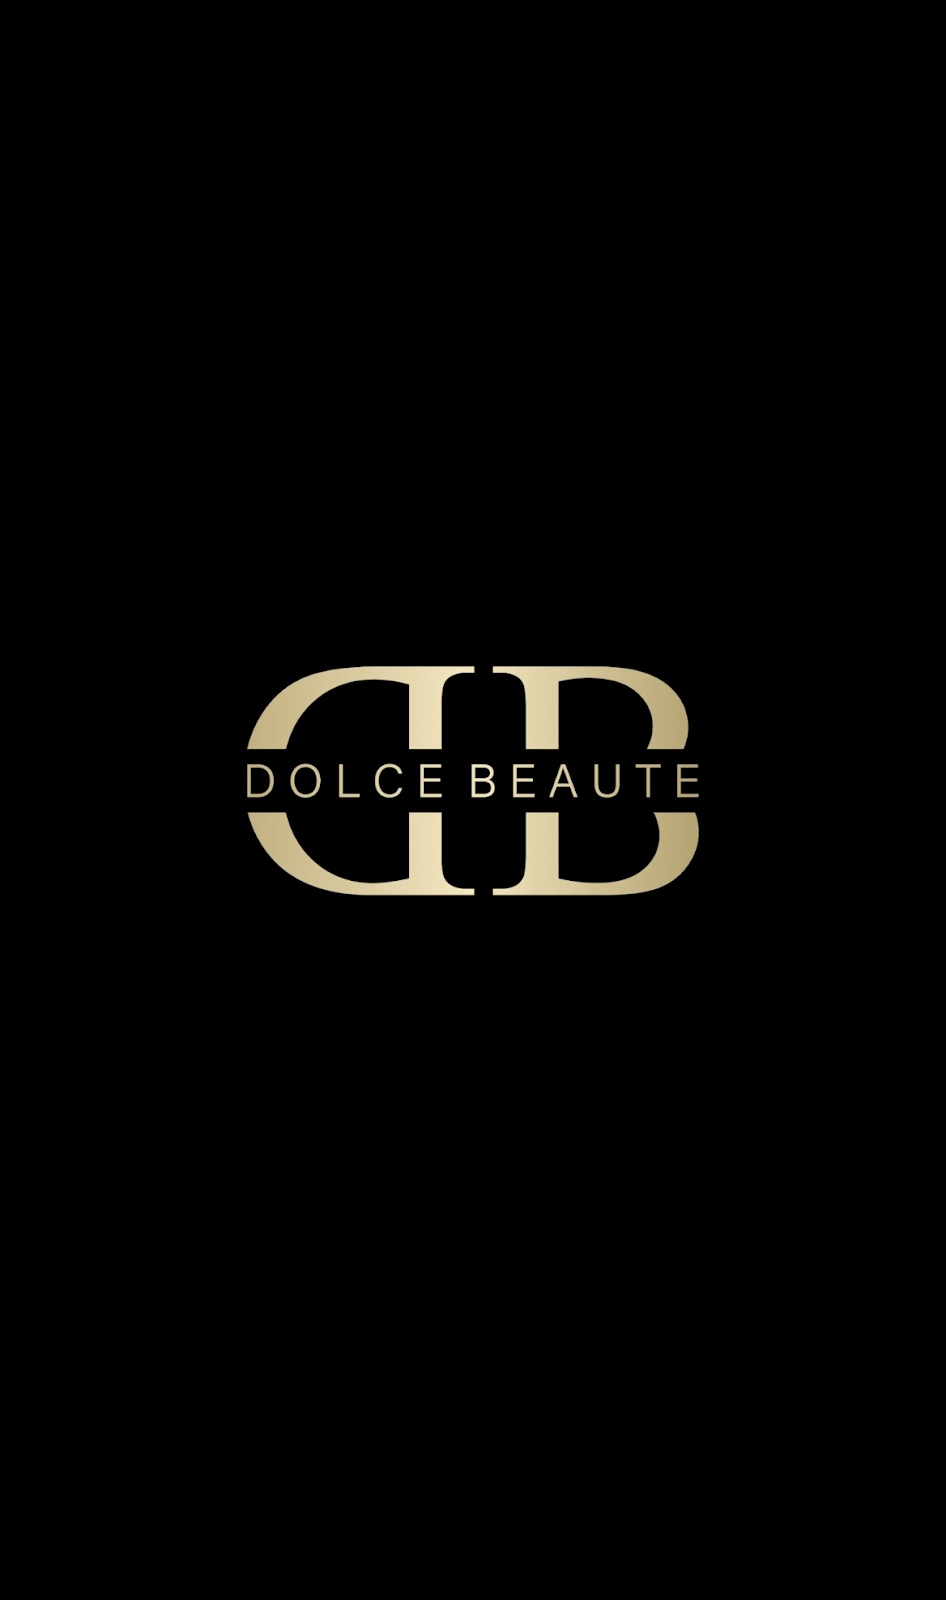 Dolce Beaute | 48 Bazentin St, Belfield NSW 2191, Australia | Phone: 0451 910 800